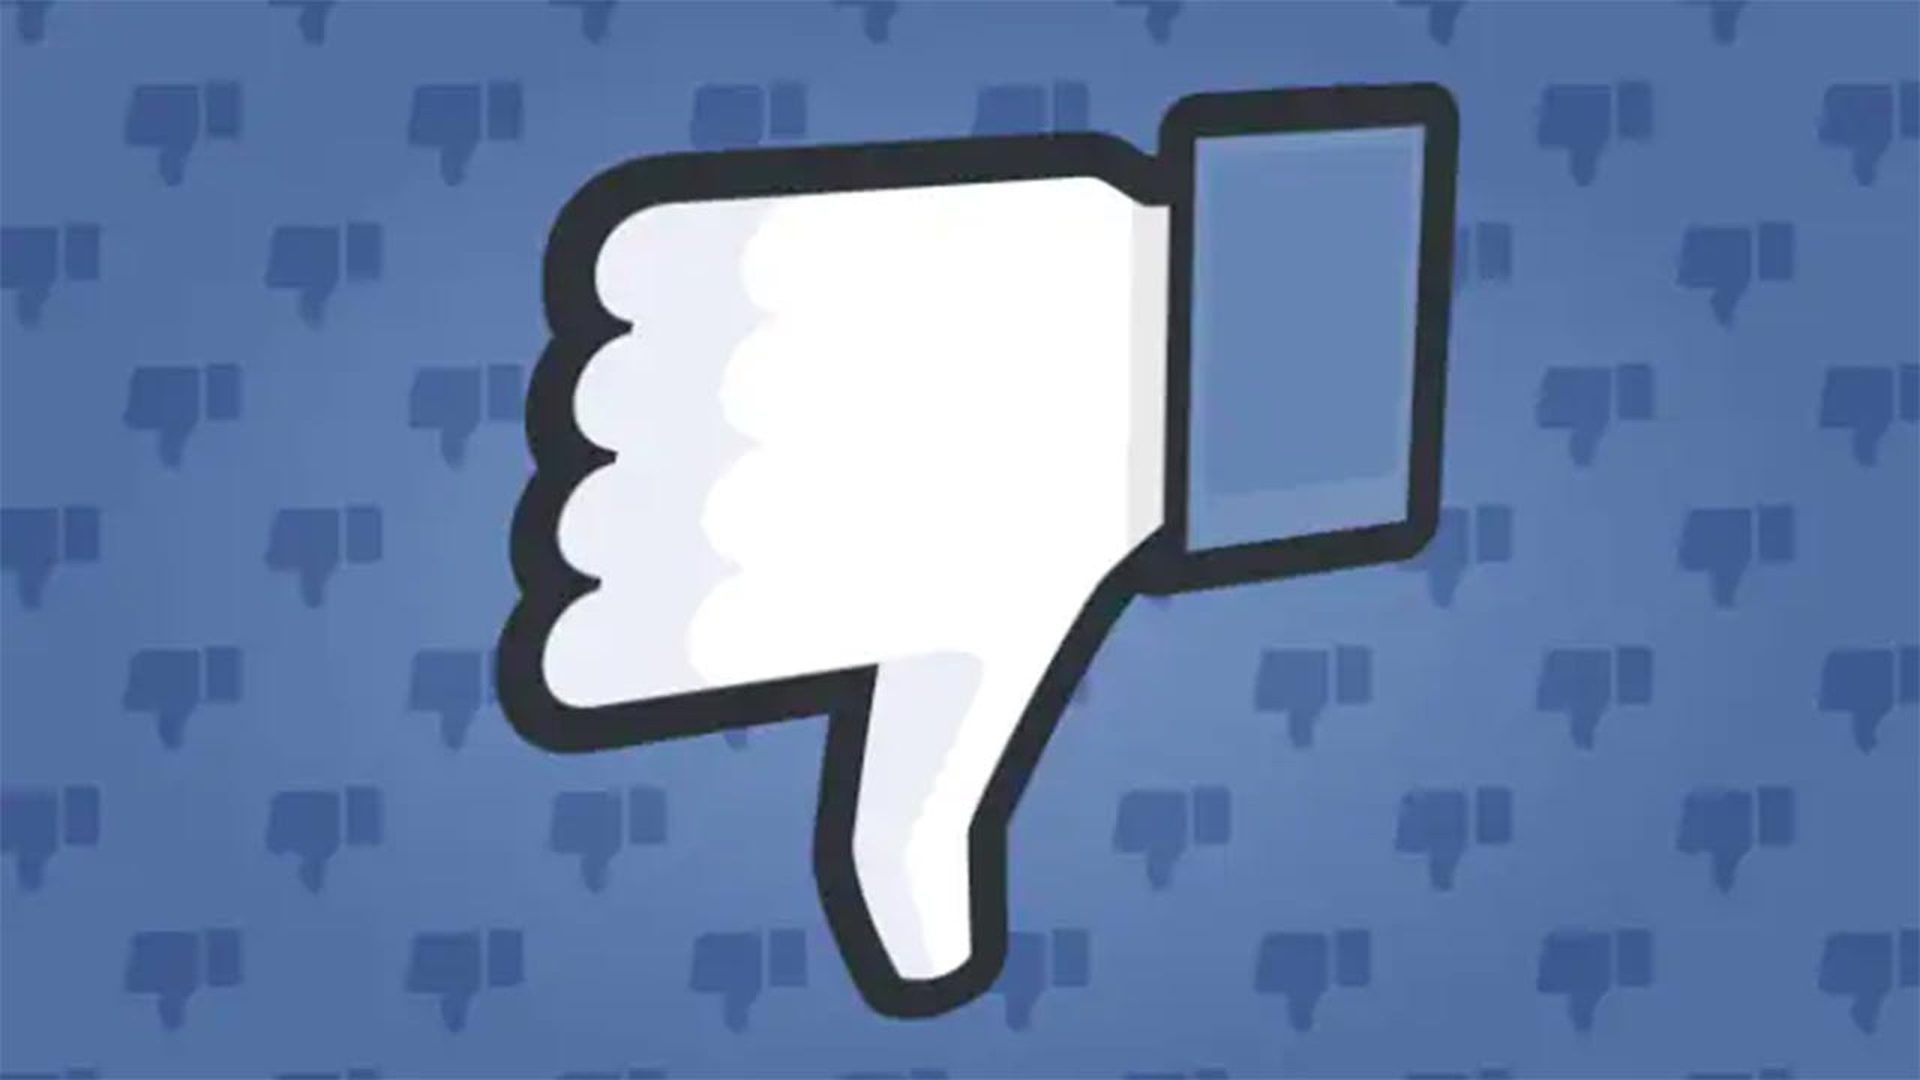 Commenti di Facebook non visualizzati: come risolverlo?